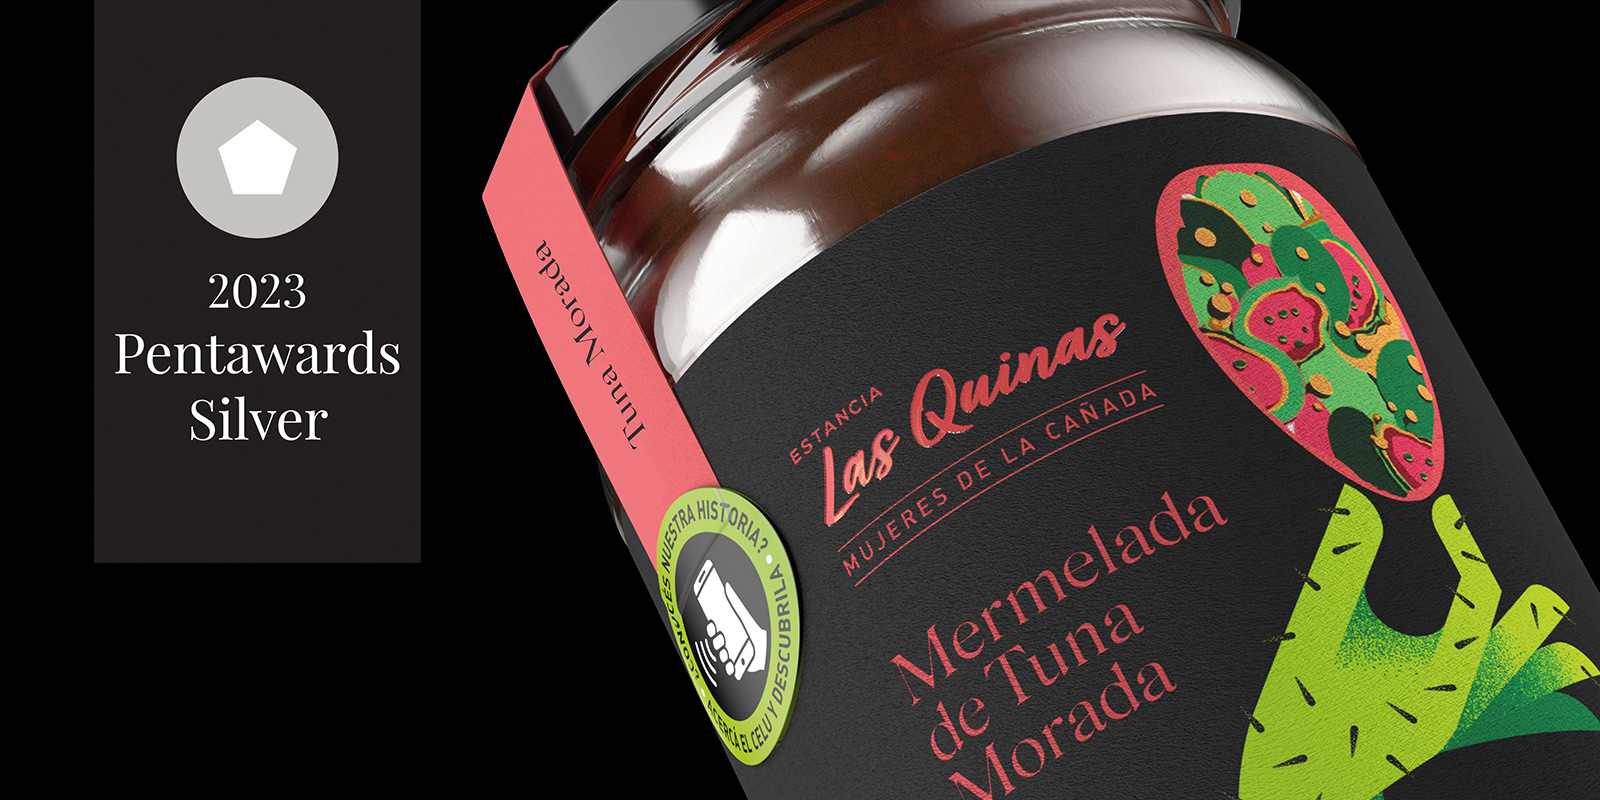 Close-up de frasco de mermelada de tuna Las Quinas x Mujeres de la Cañada. Leyenda destacada “Silver Pentaward 2023. Diseño por Tridimage.